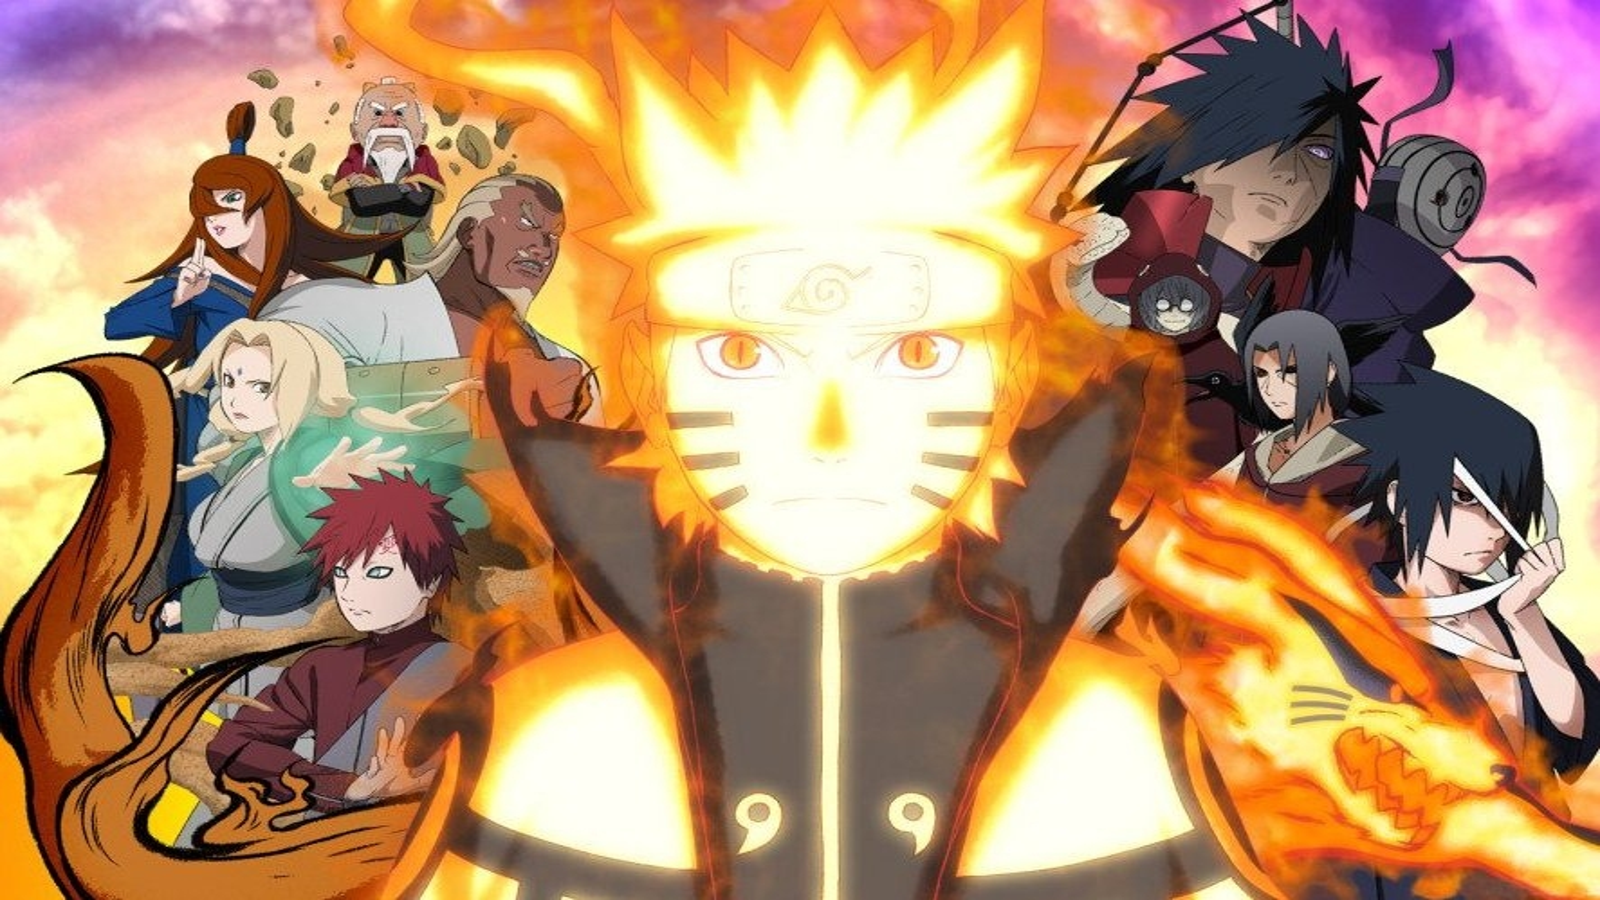  Novidades sobre o lançamento de Naruto